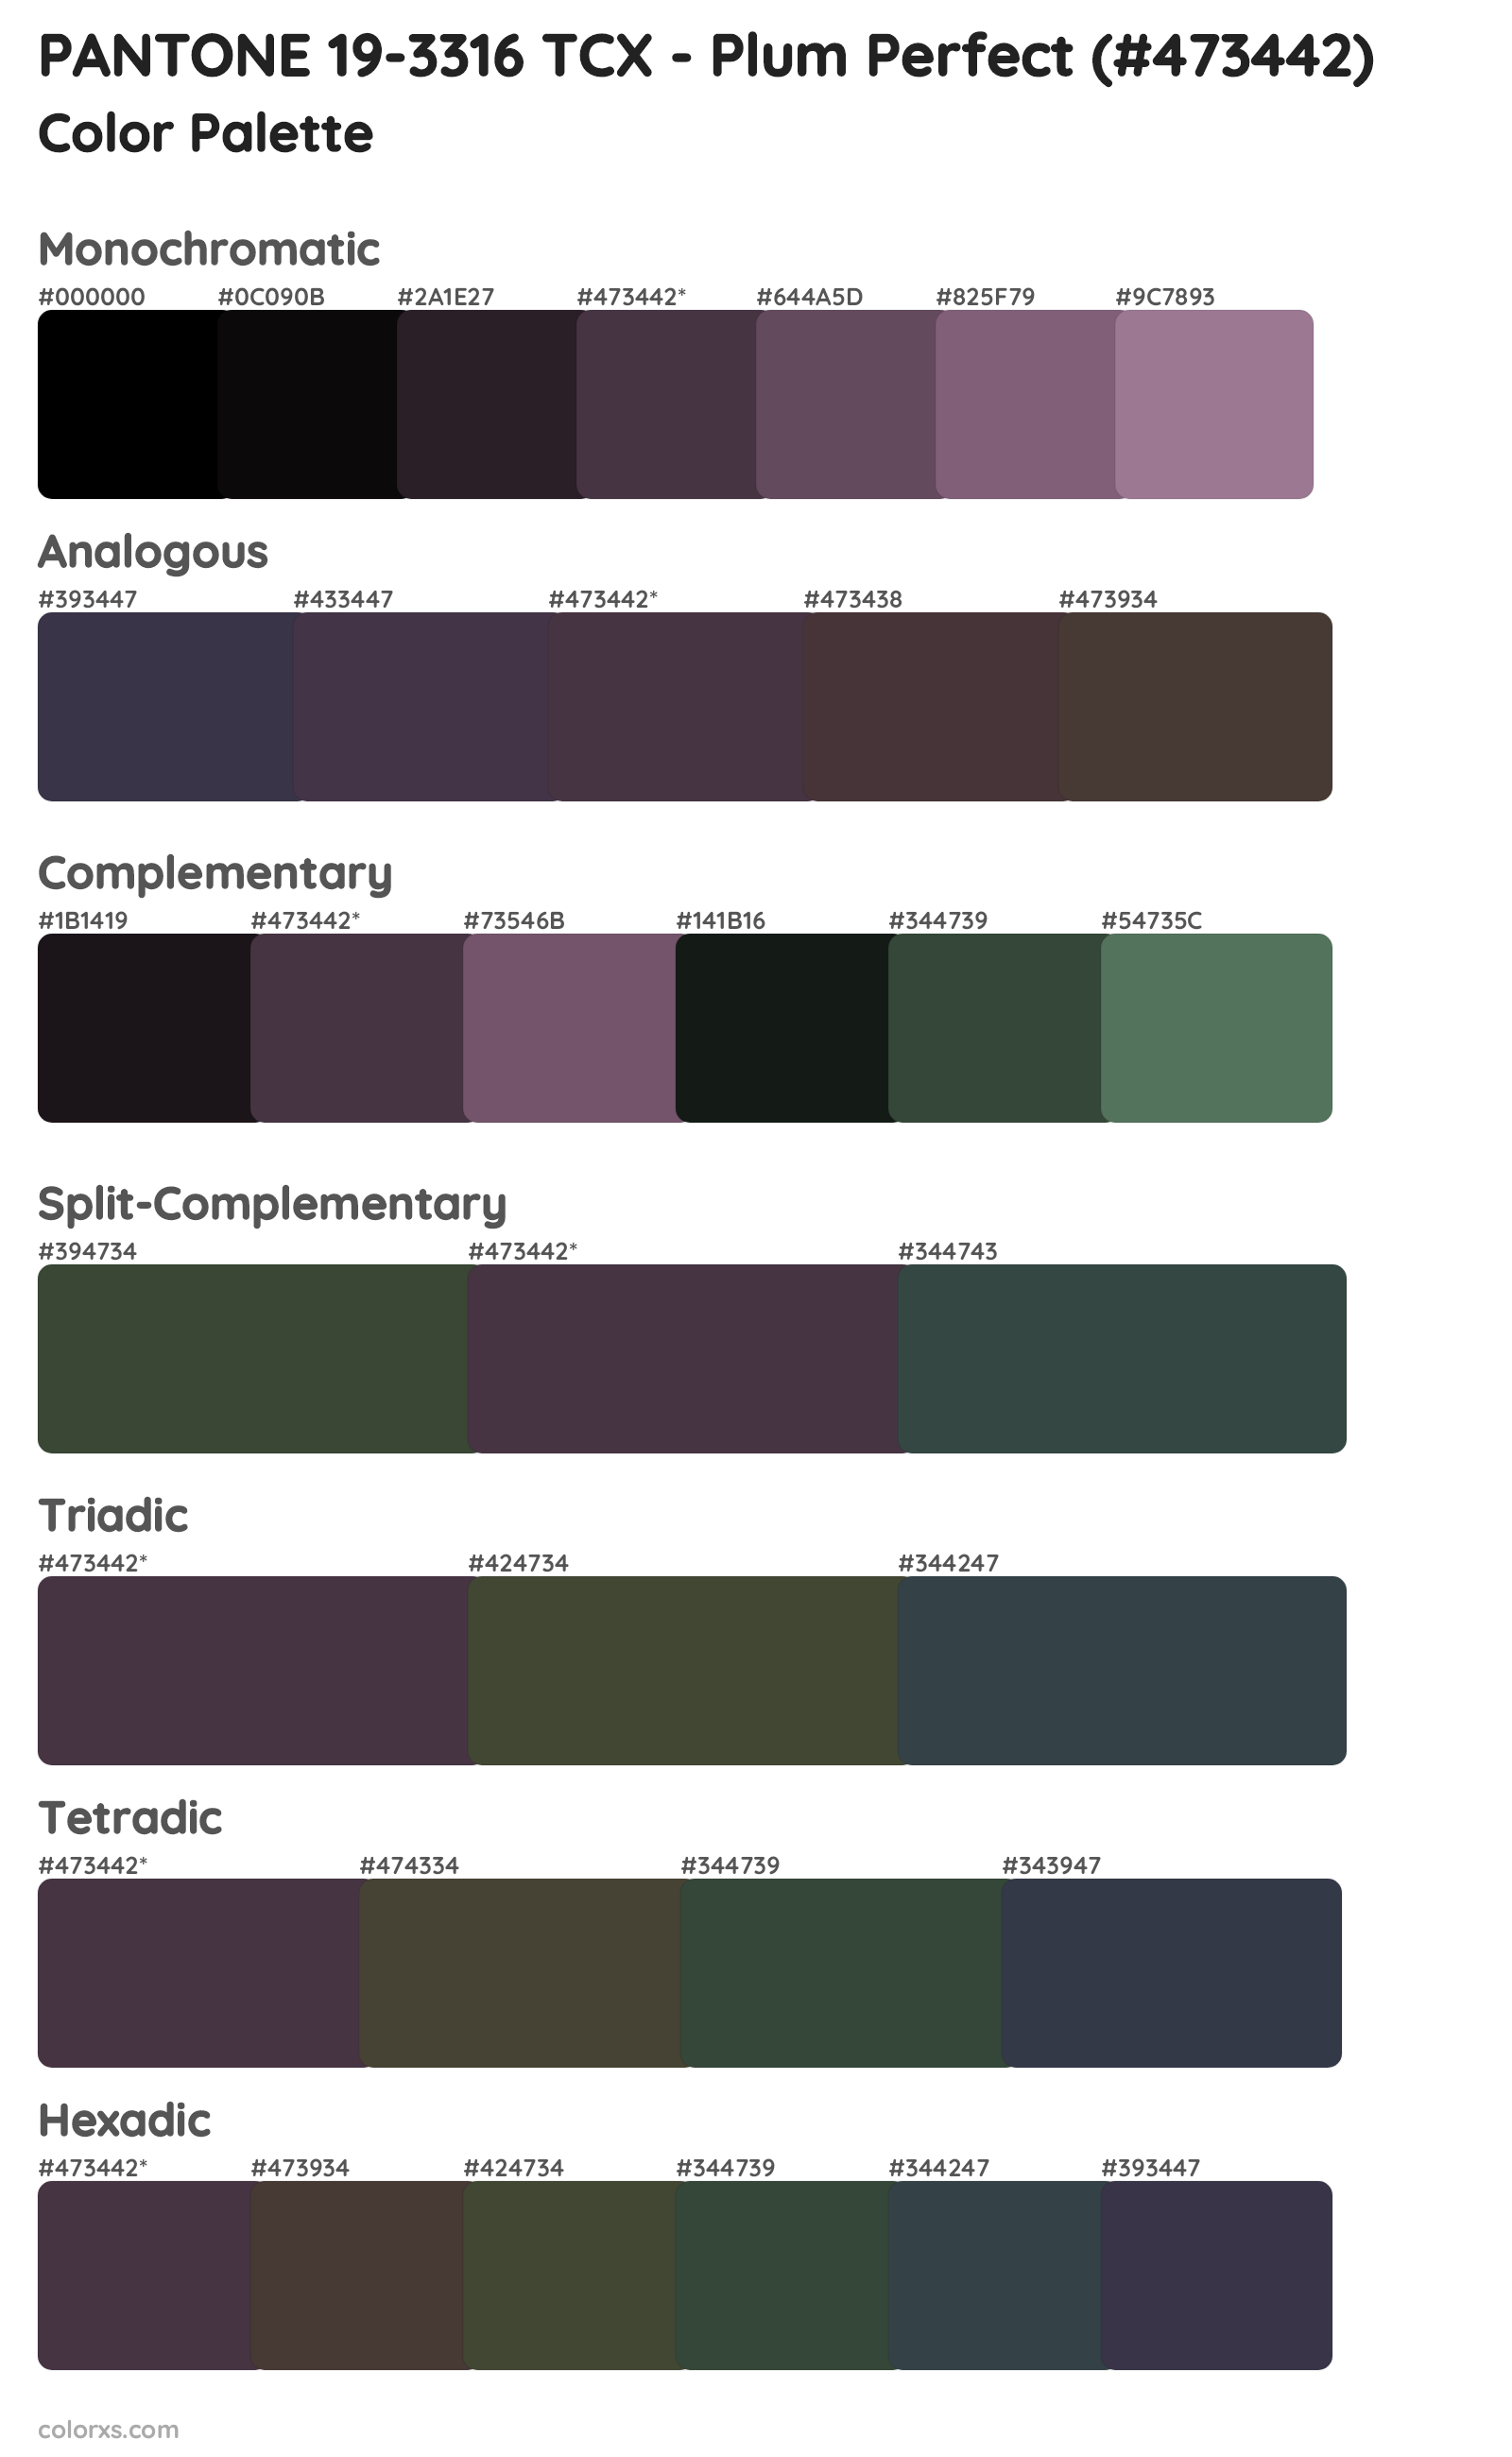 PANTONE 19-3316 TCX - Plum Perfect Color Scheme Palettes